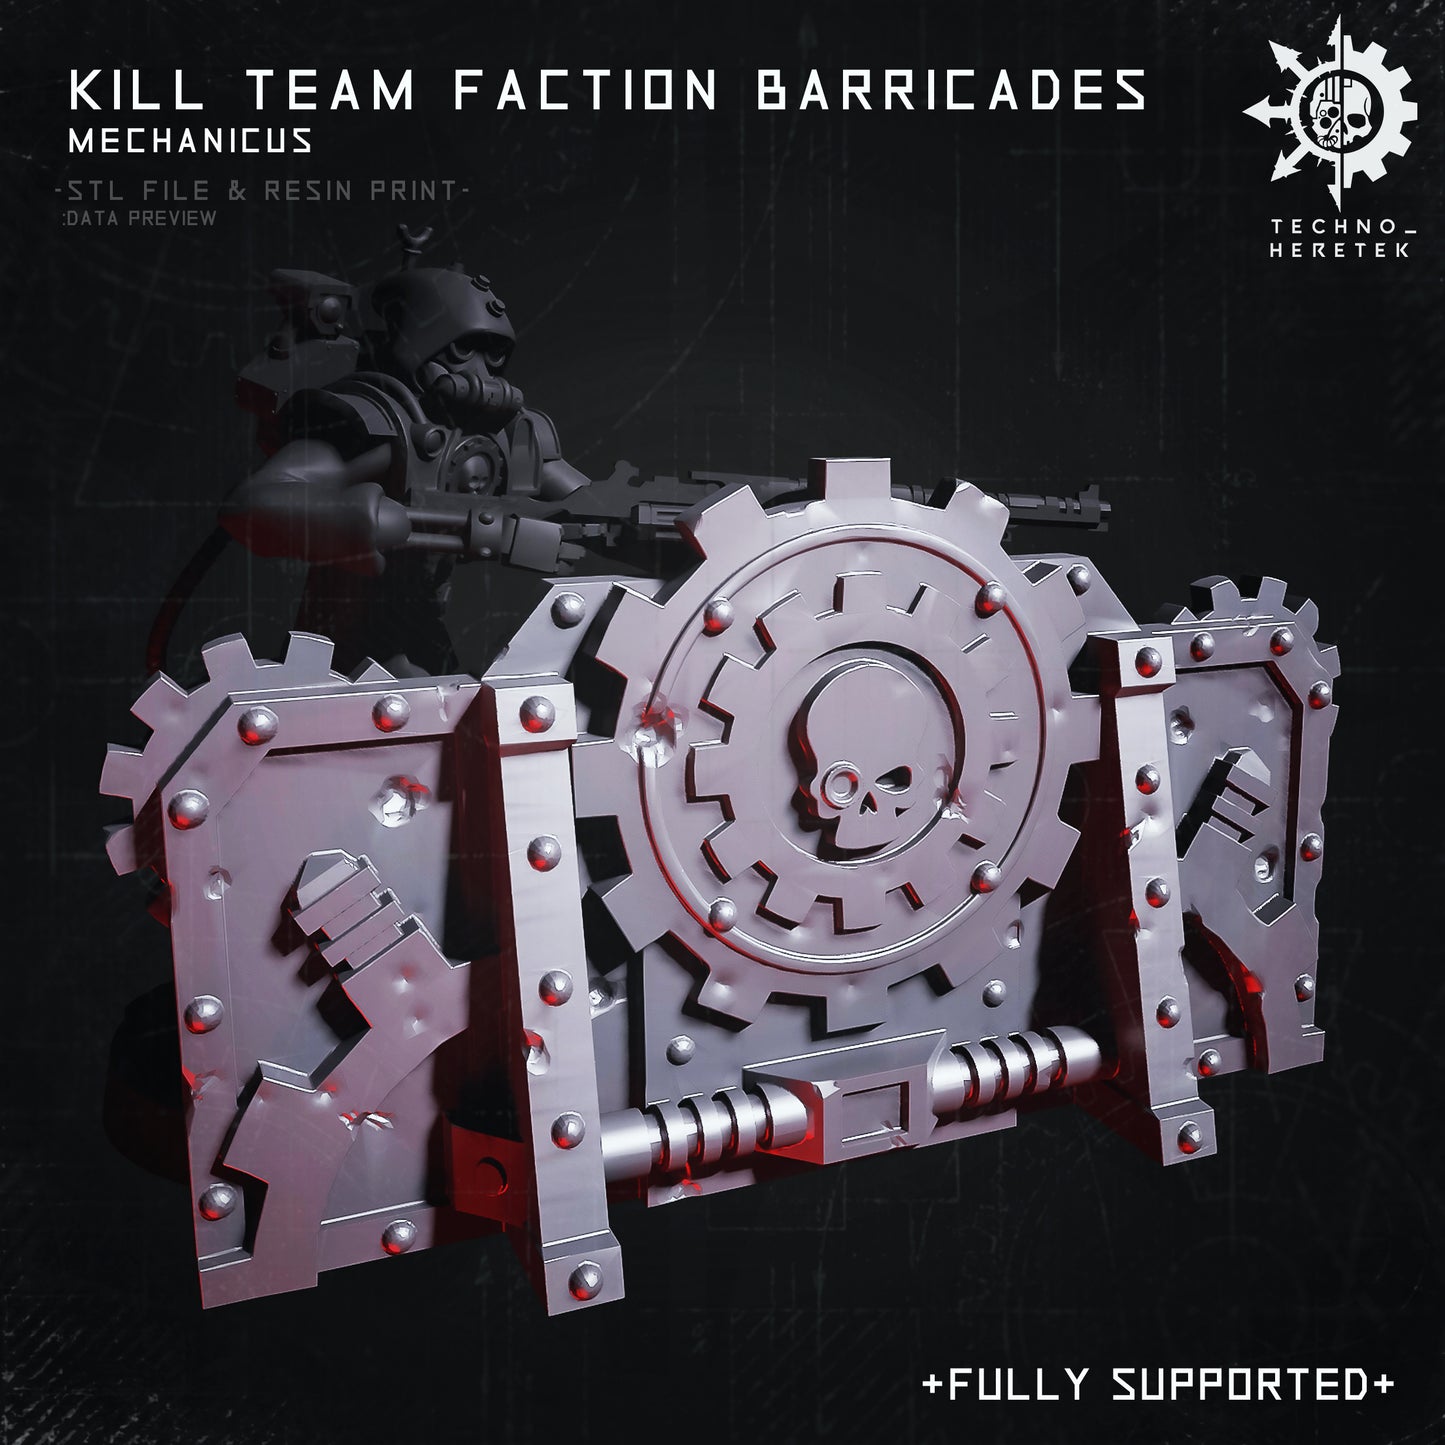 Mechanicus Faction Barricades for Kill Team